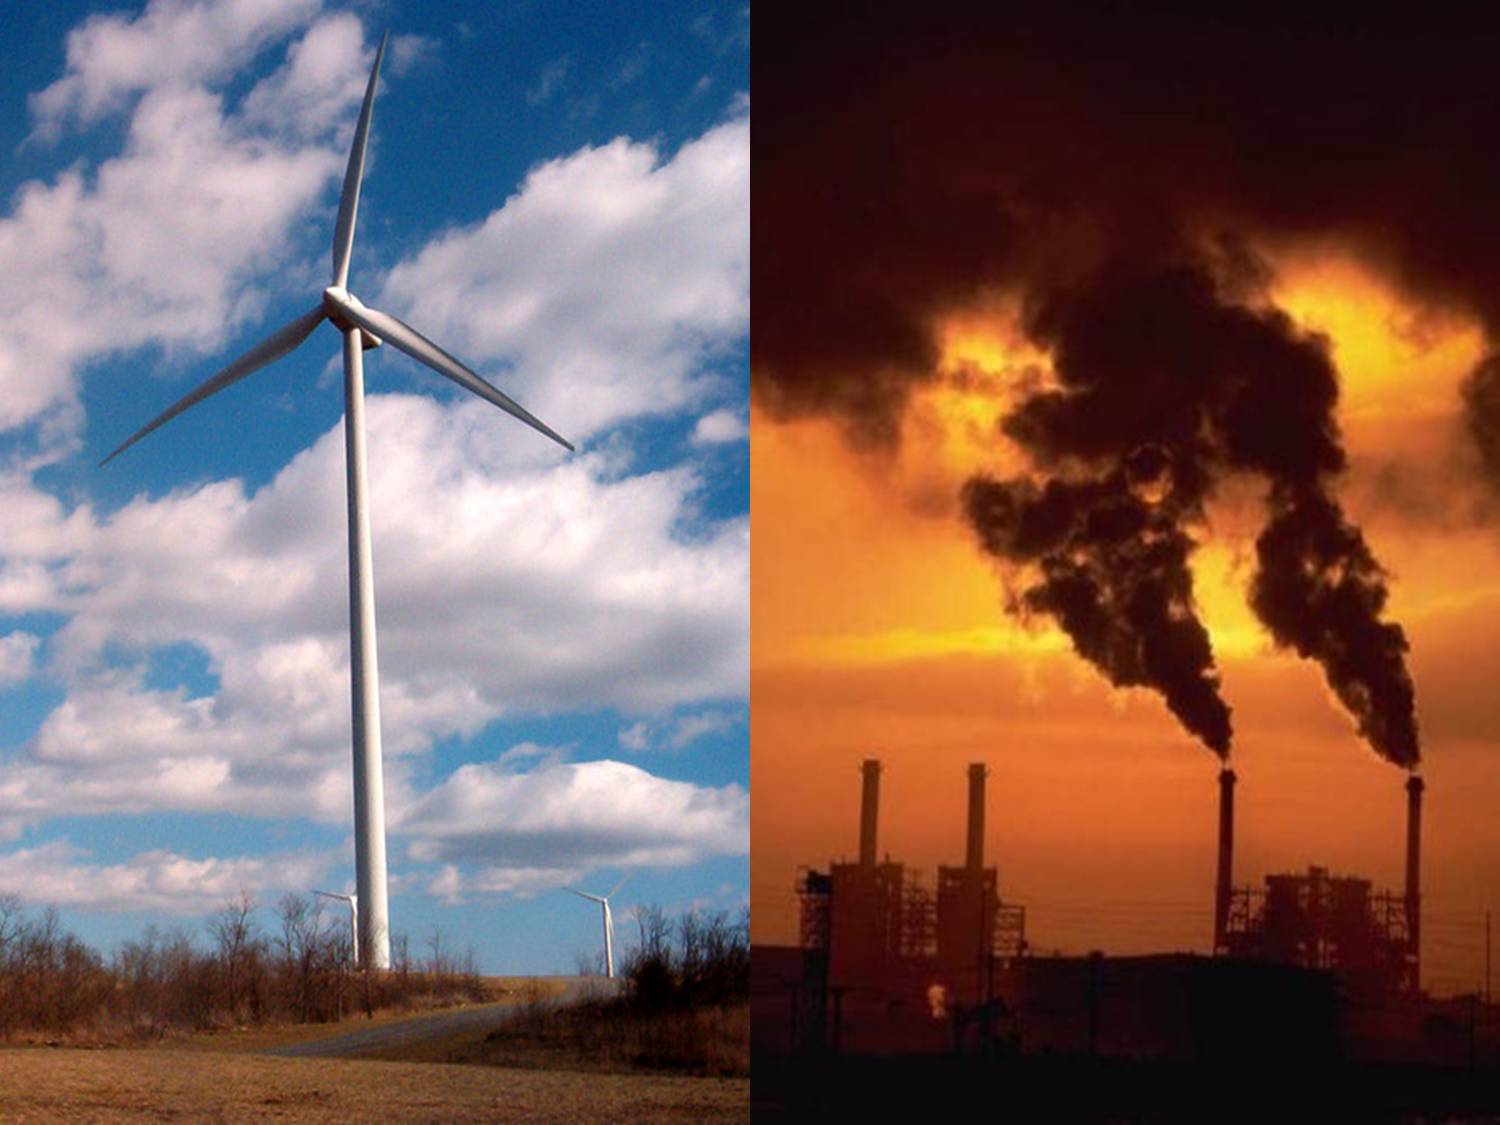 Al Gore, optimista gracias a eólica y energías renovables para emitir menos CO2 y frenar cambio climático